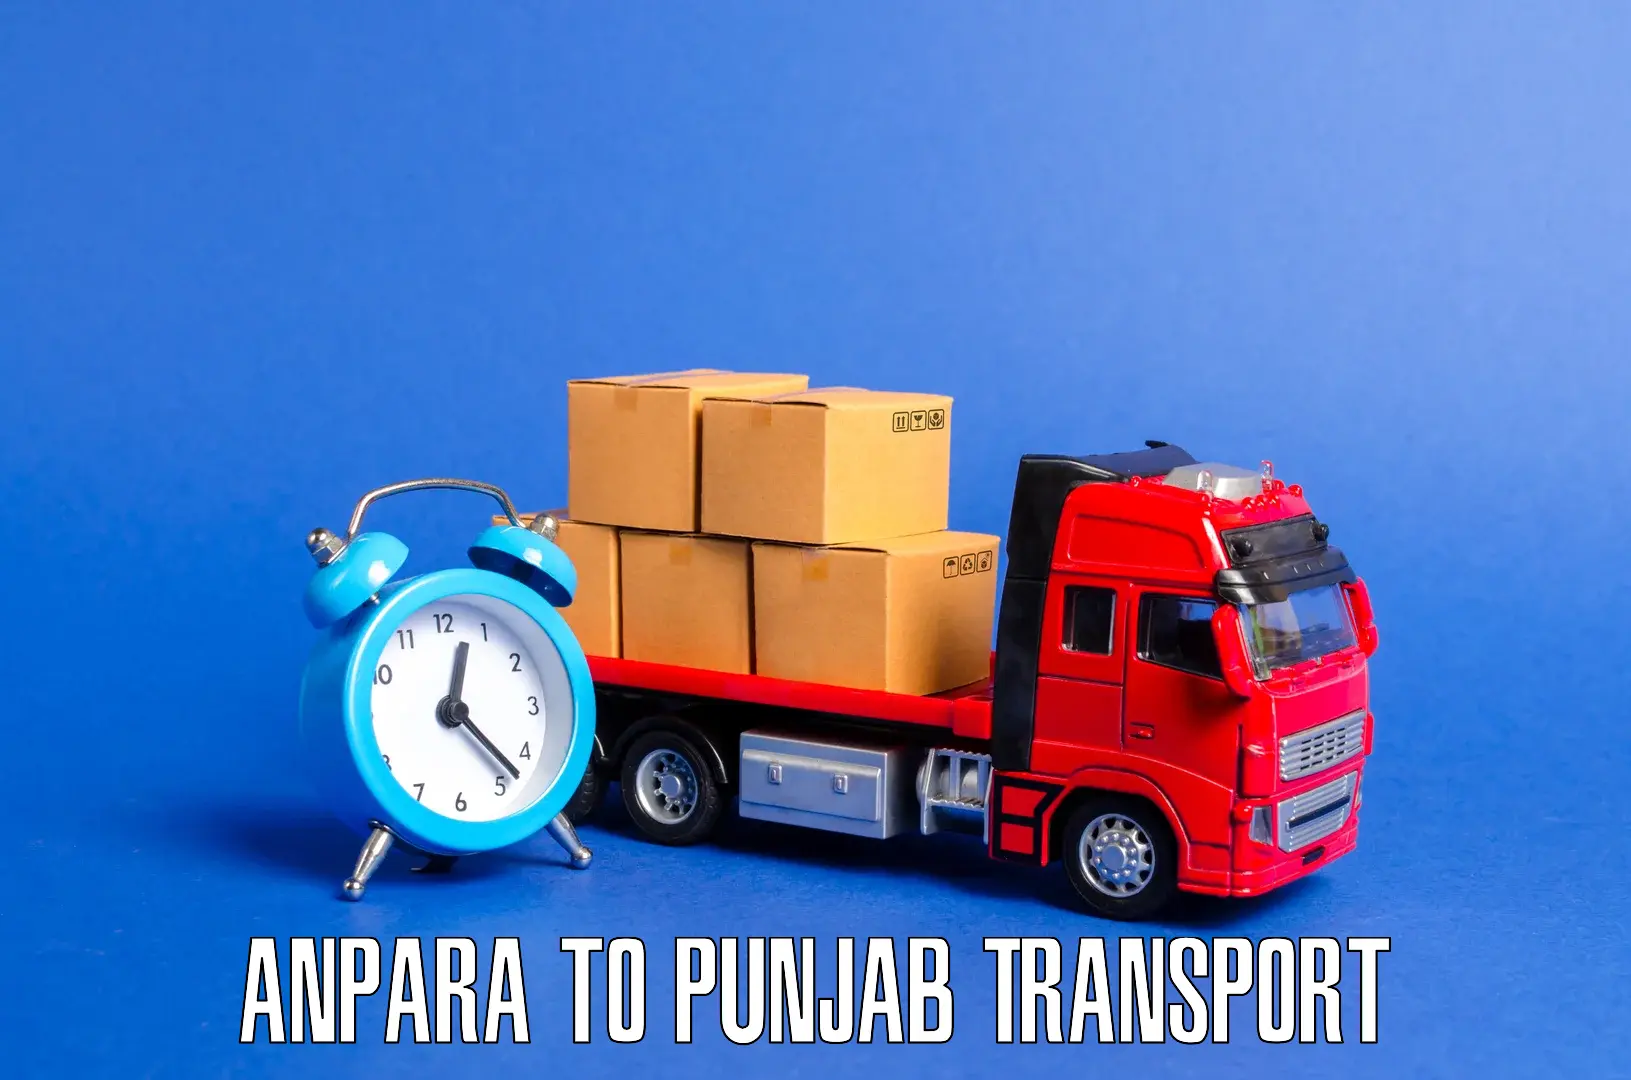 Bike shipping service Anpara to Central University of Punjab Bathinda